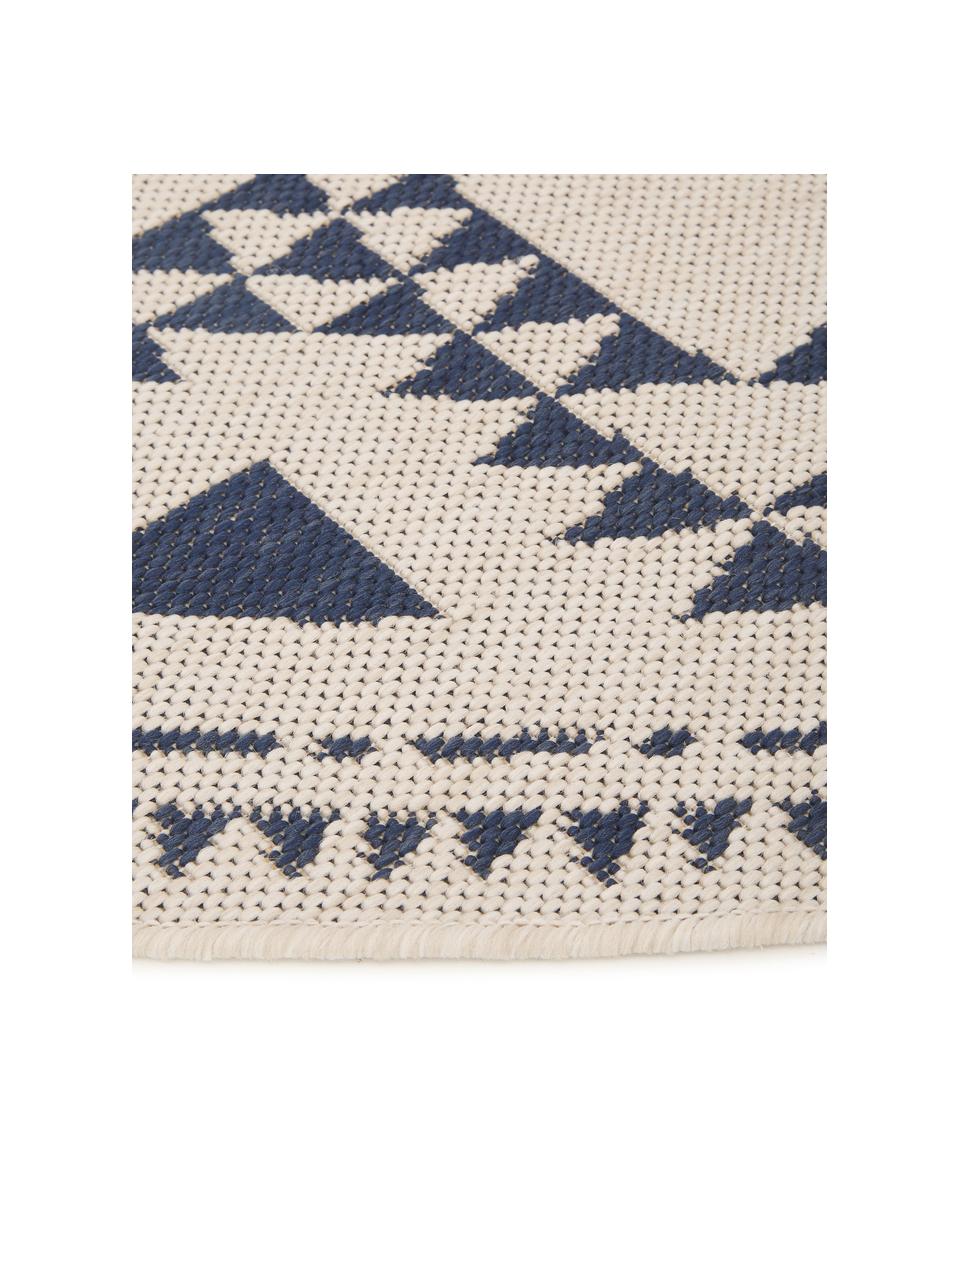 Runder In- & Outdoor-Teppich Arre im Ethno Style, 100% Polypropylen, Weiß, Blau, Ø 200 cm (Größe L)